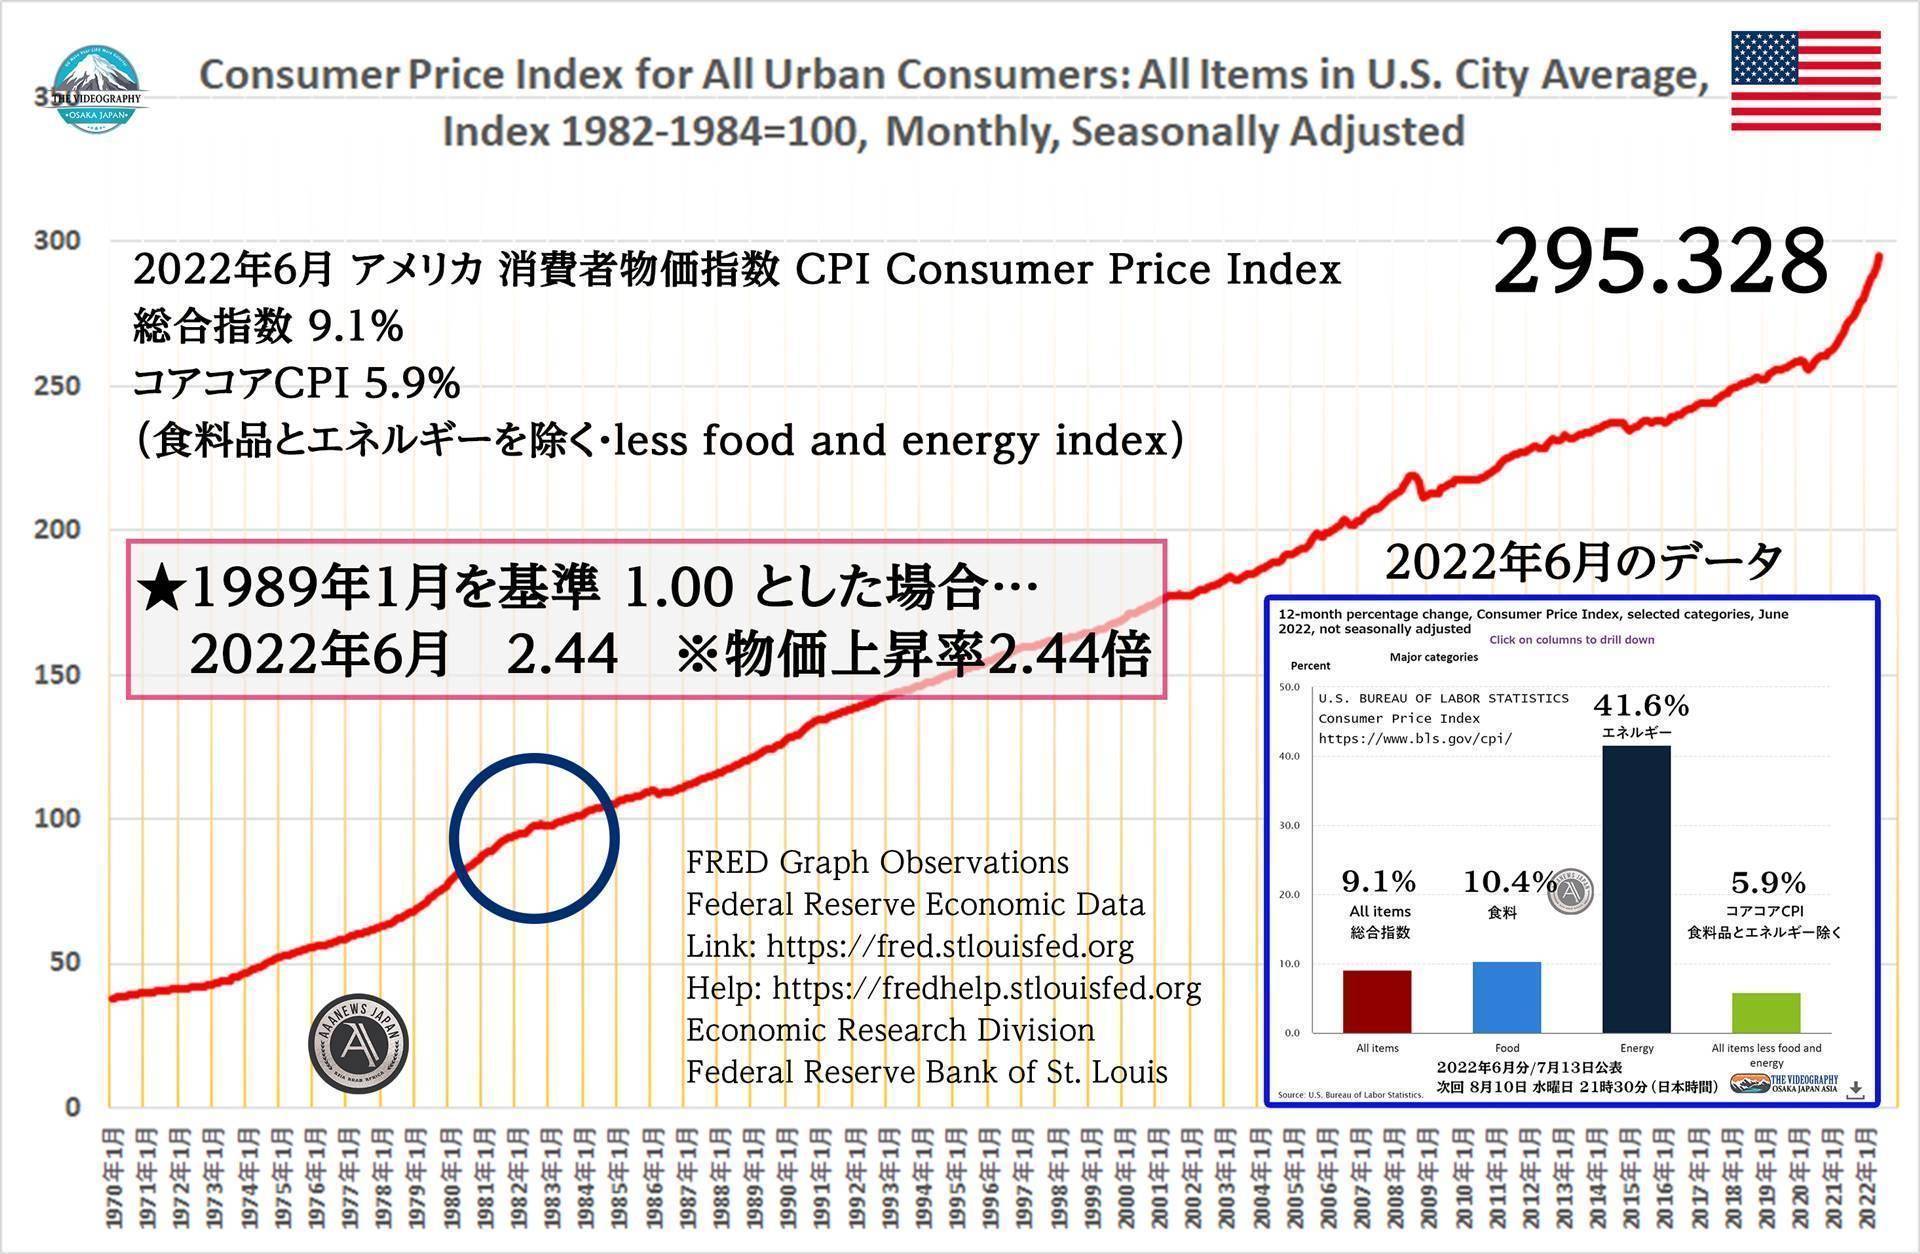 アメリカの消費者物価指数 CPI / Consumer price index 1989年を基準 1 と設定すると、2022年6月 2.44。つまり物価が144％増加 2.44倍 上昇している。